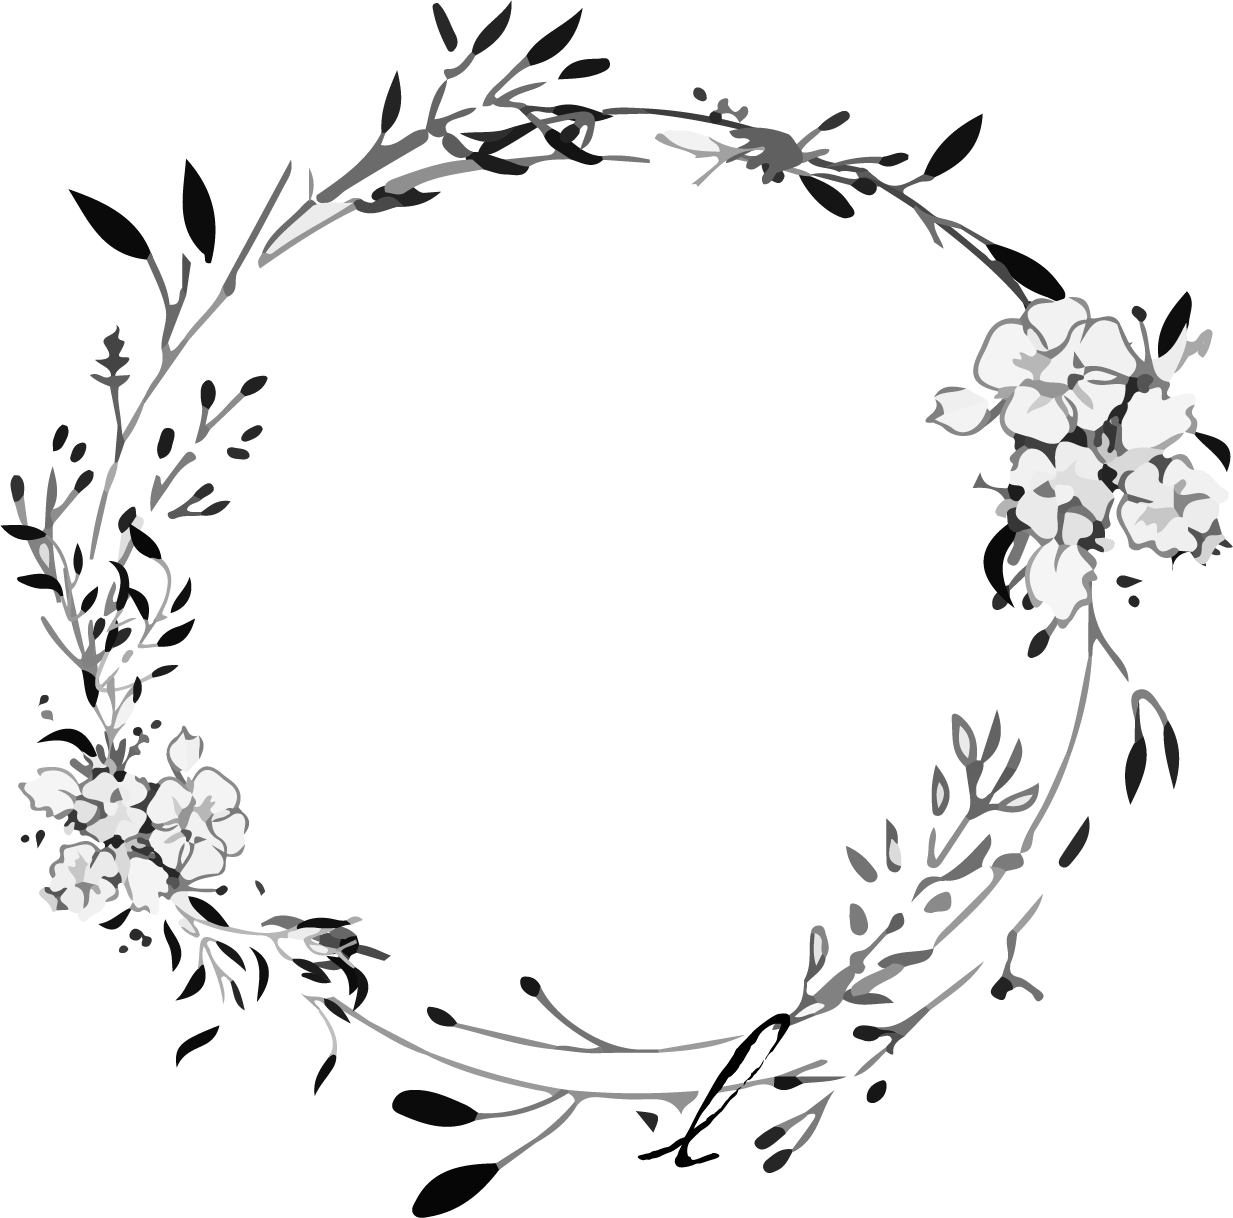 The Zone Salon